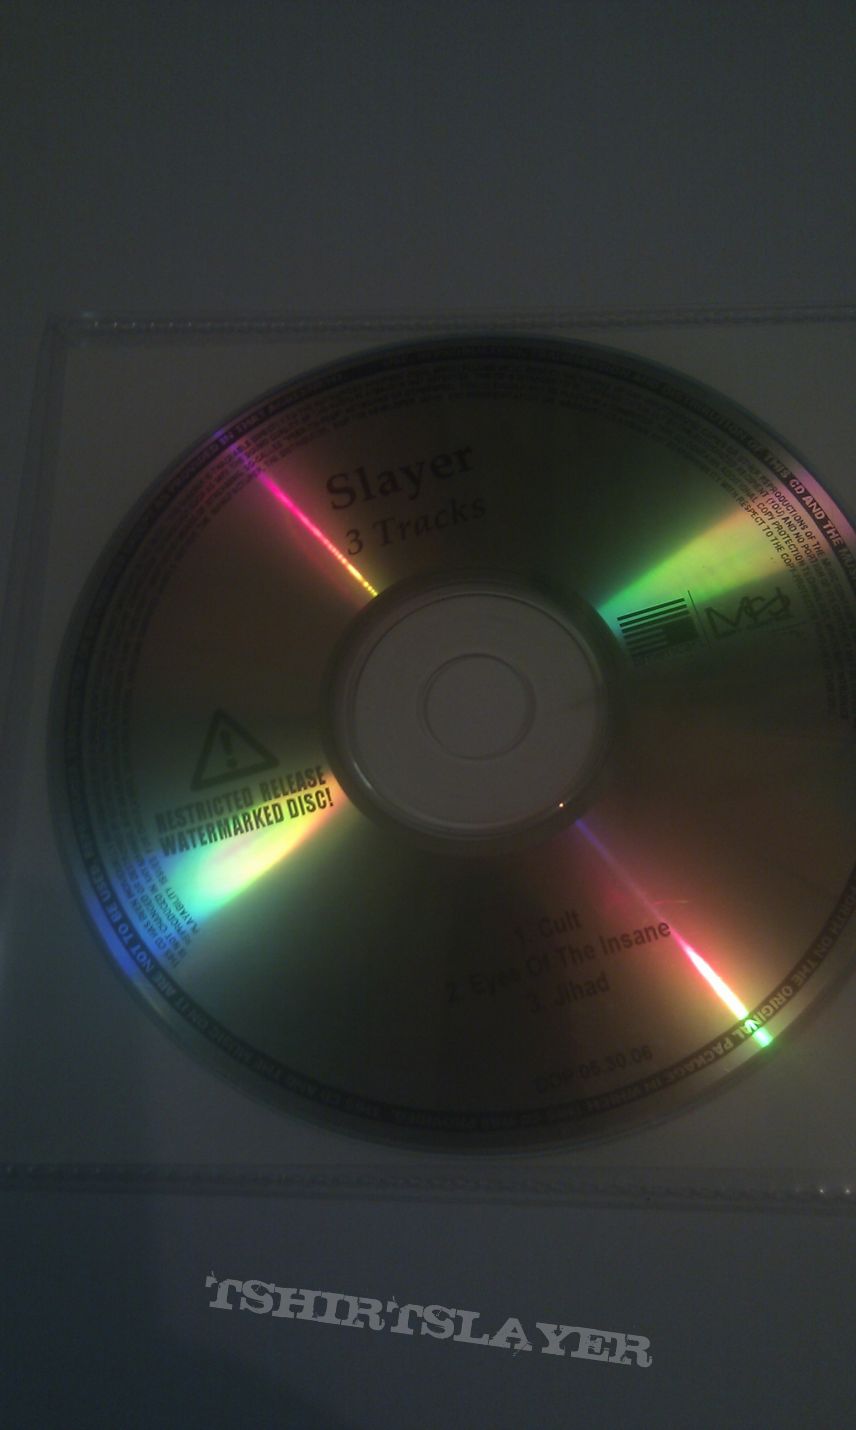 Slayer - Cult pre-release sampler